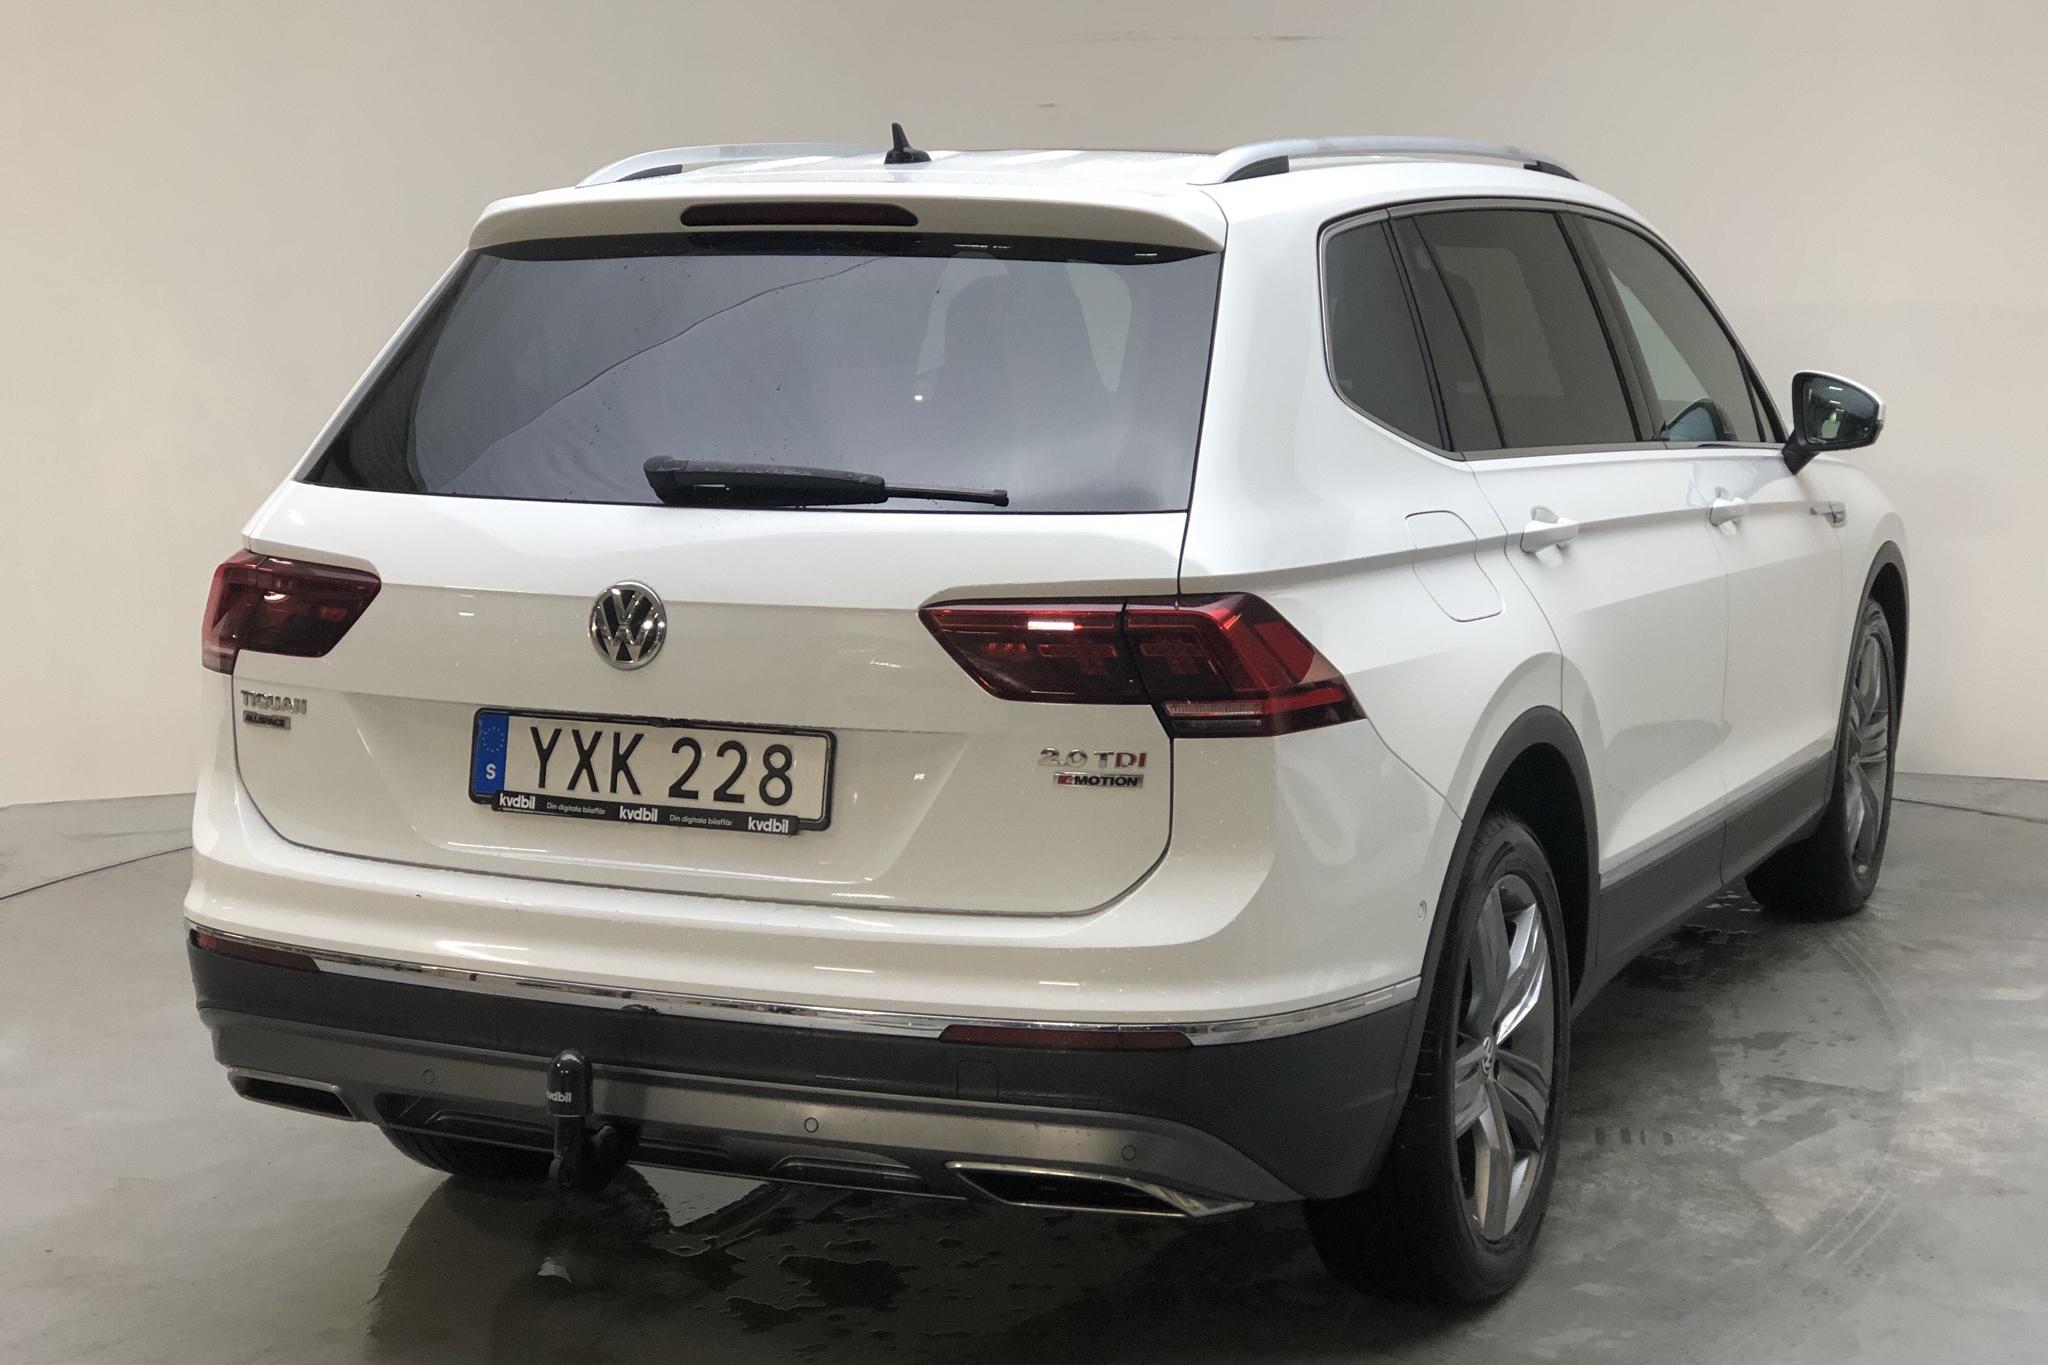 VW Tiguan Allspace 2.0 TDI 4MOTION (190hk) - 224 930 km - Automatic - white - 2018